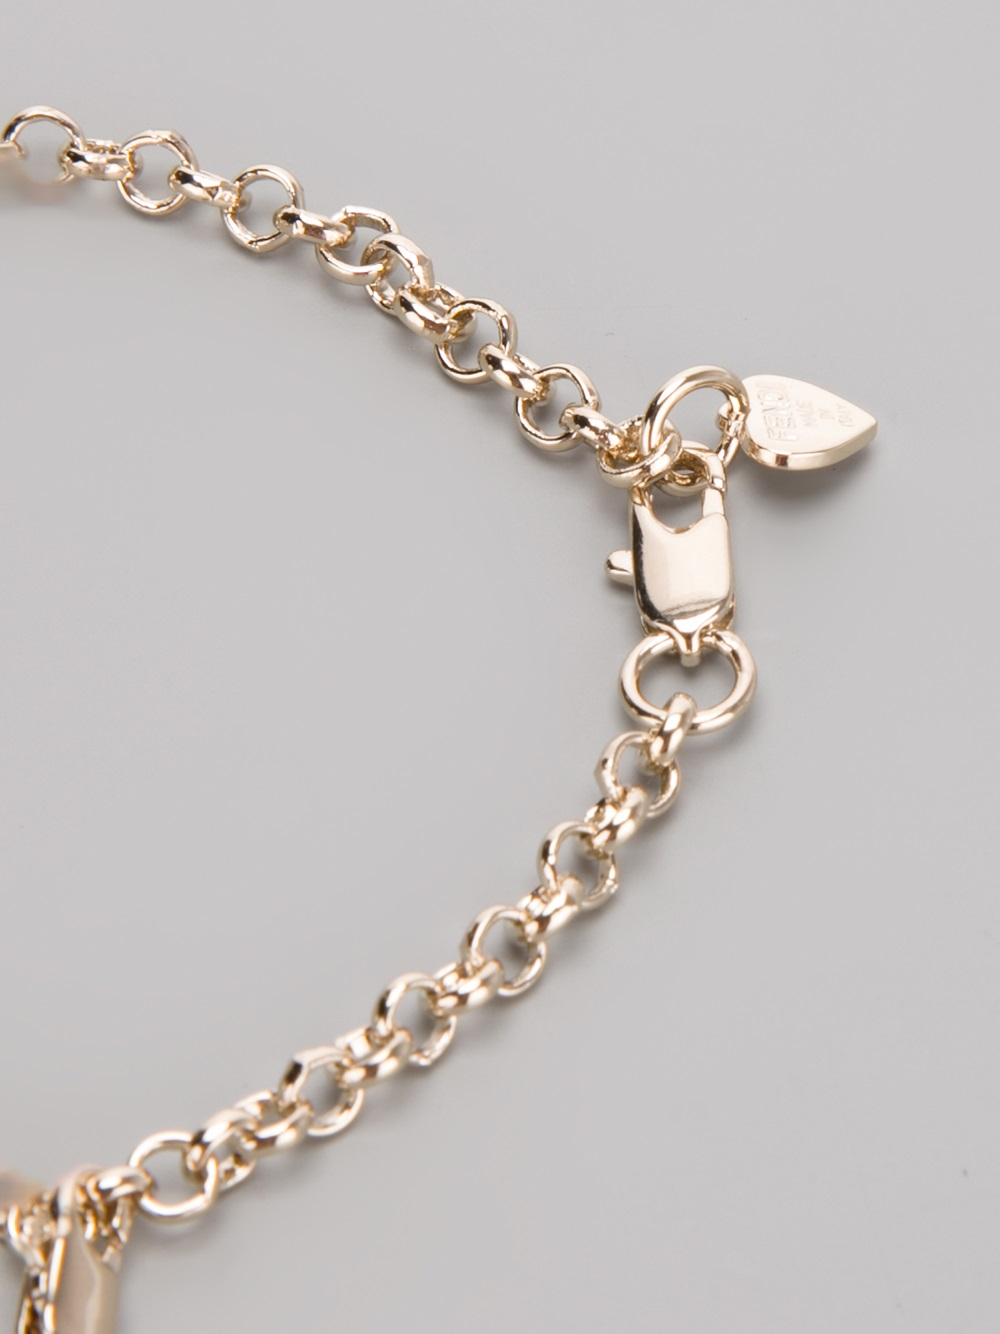 Lyst - Fendi Charm Bracelet in Metallic